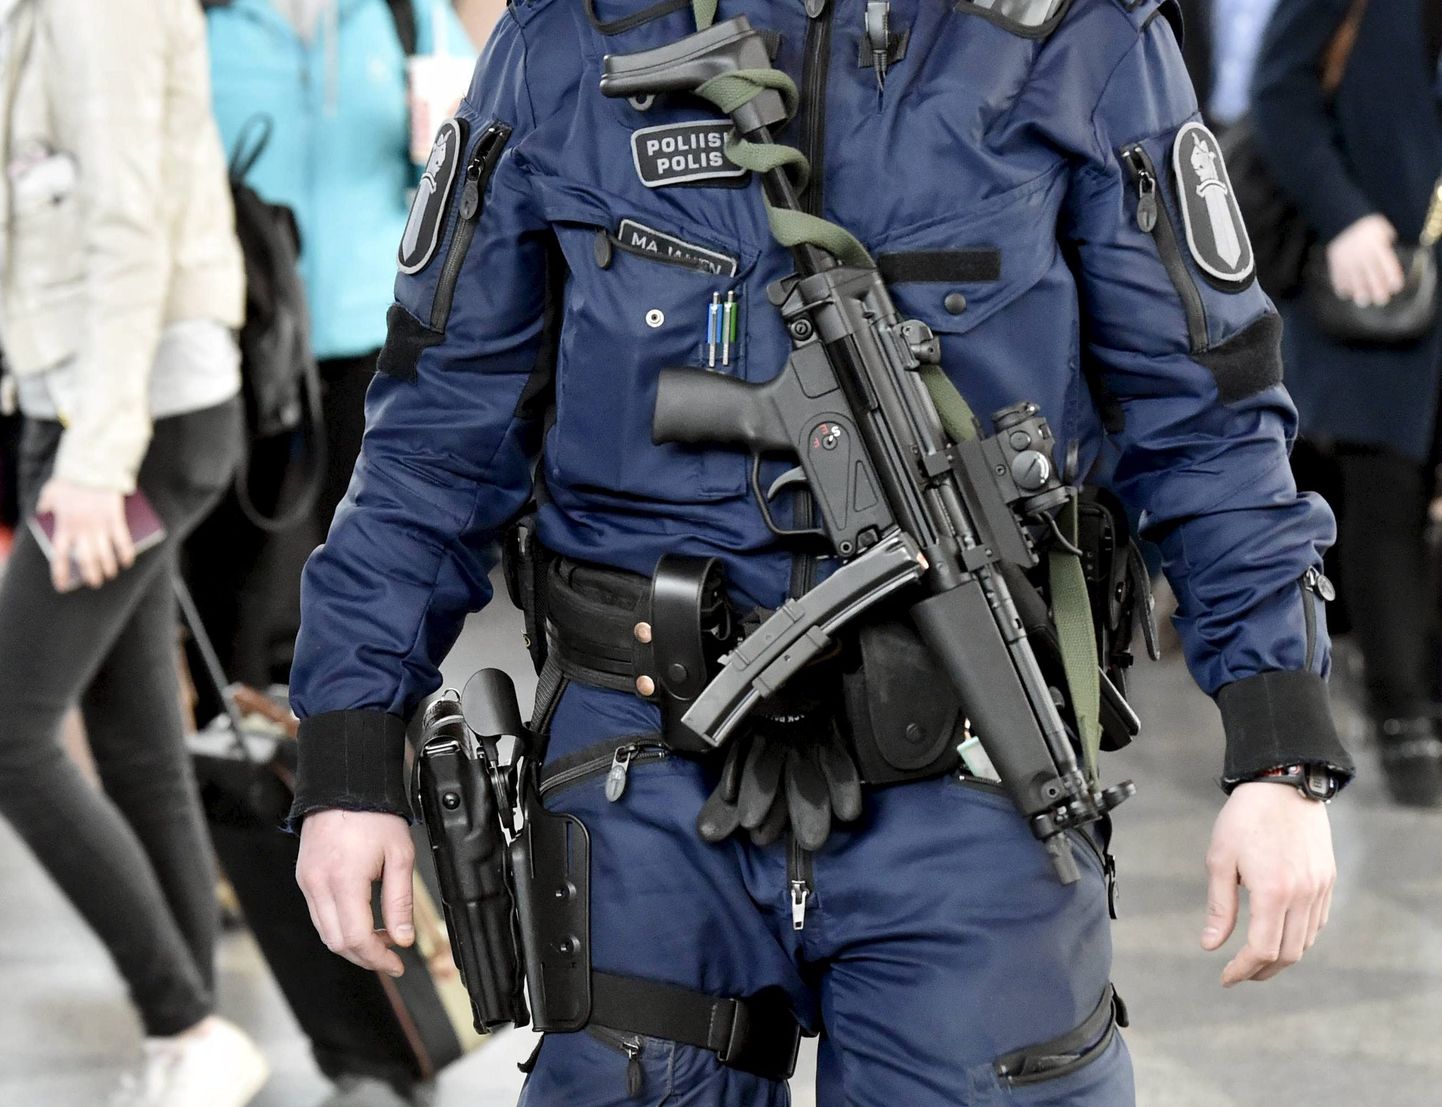 Soome politseinik täisvarustuses.